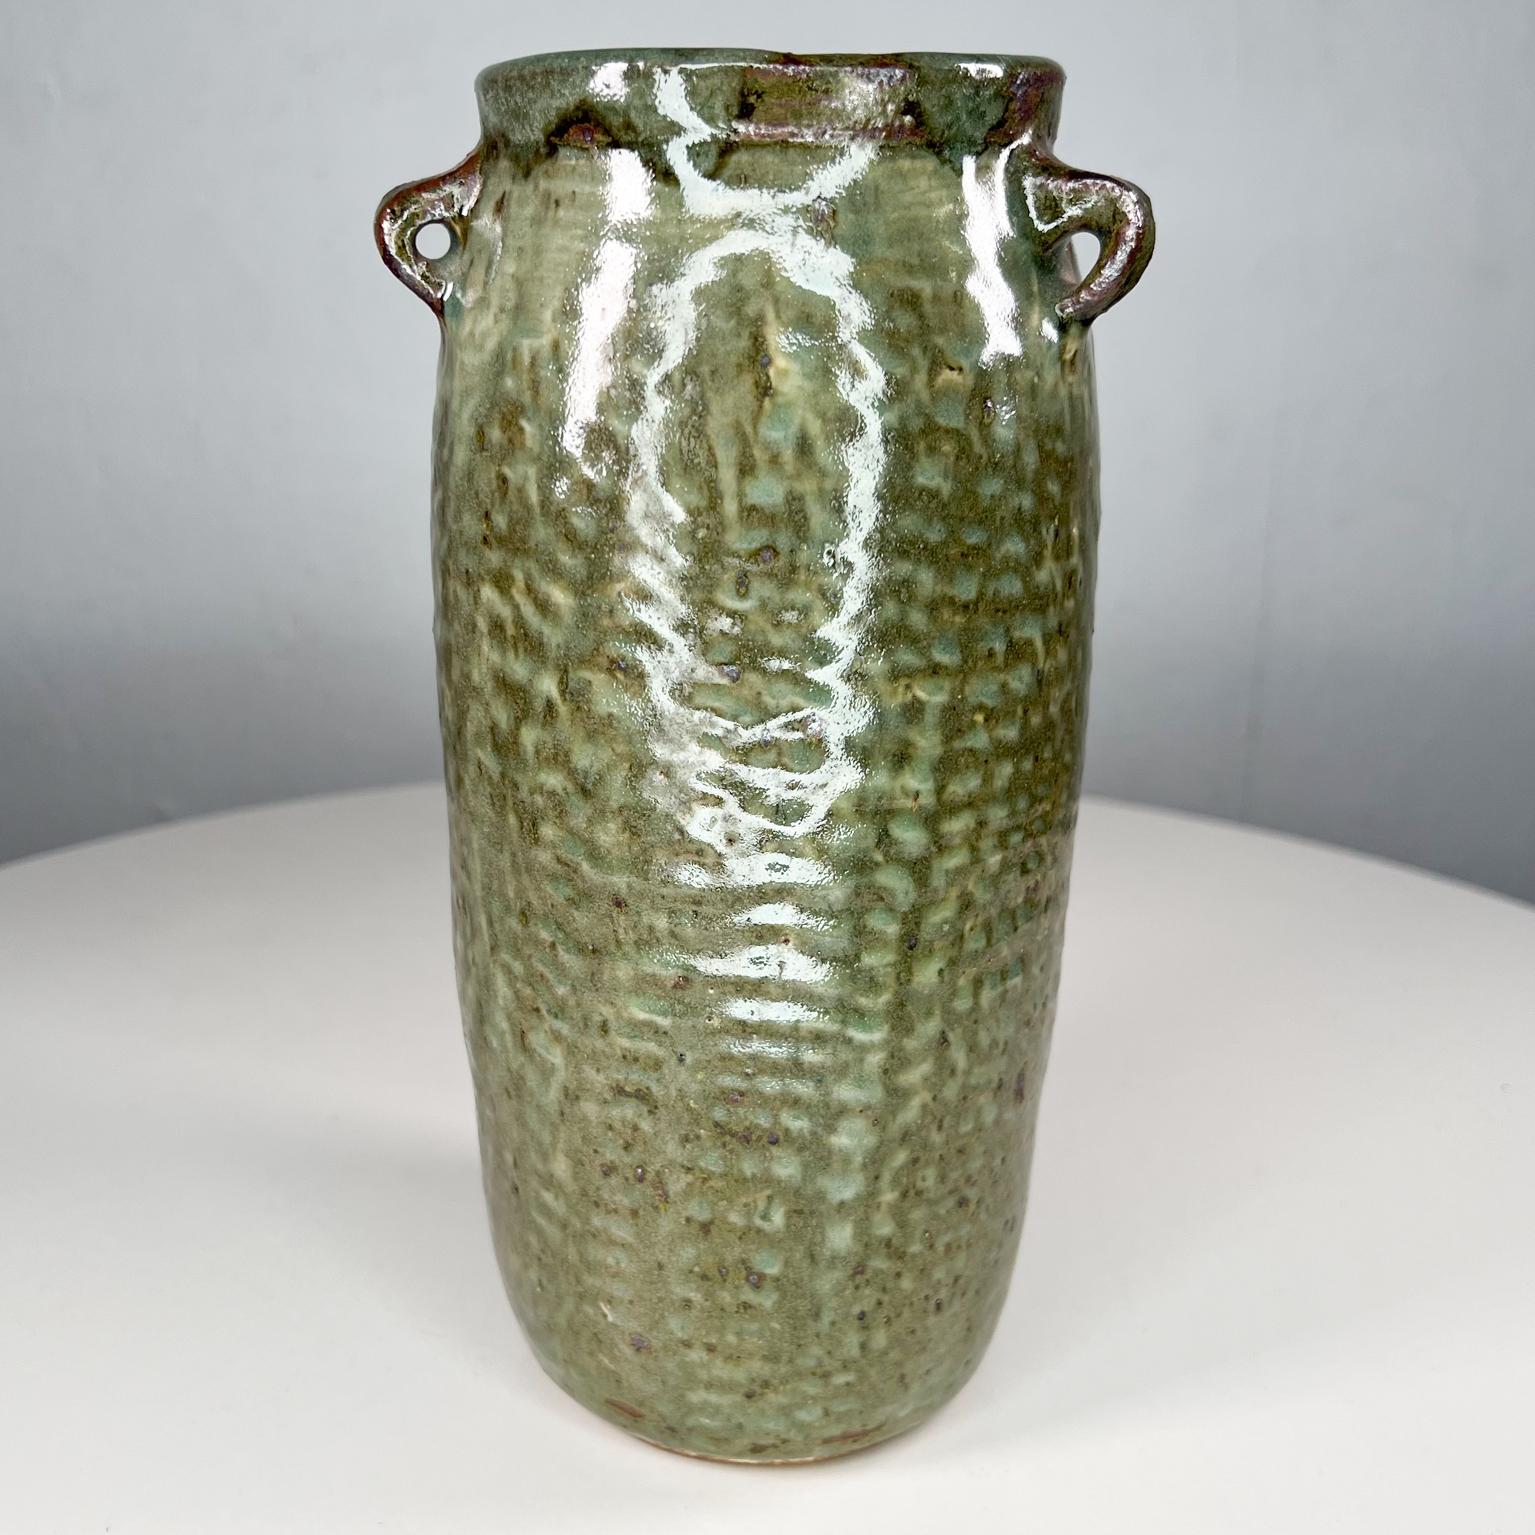 Vivika & Otto Heino Studio Töpferei Vase aus Ojai Calif
Hersteller gestempelt
Eine wundervoll ausgeführte und gestaltete Vase aus Steingut von dem Künstlerehepaar Vivika und Otto Heino, den Meistern der Keramikkunst.
Maße: 8,88 hoch x 4,5